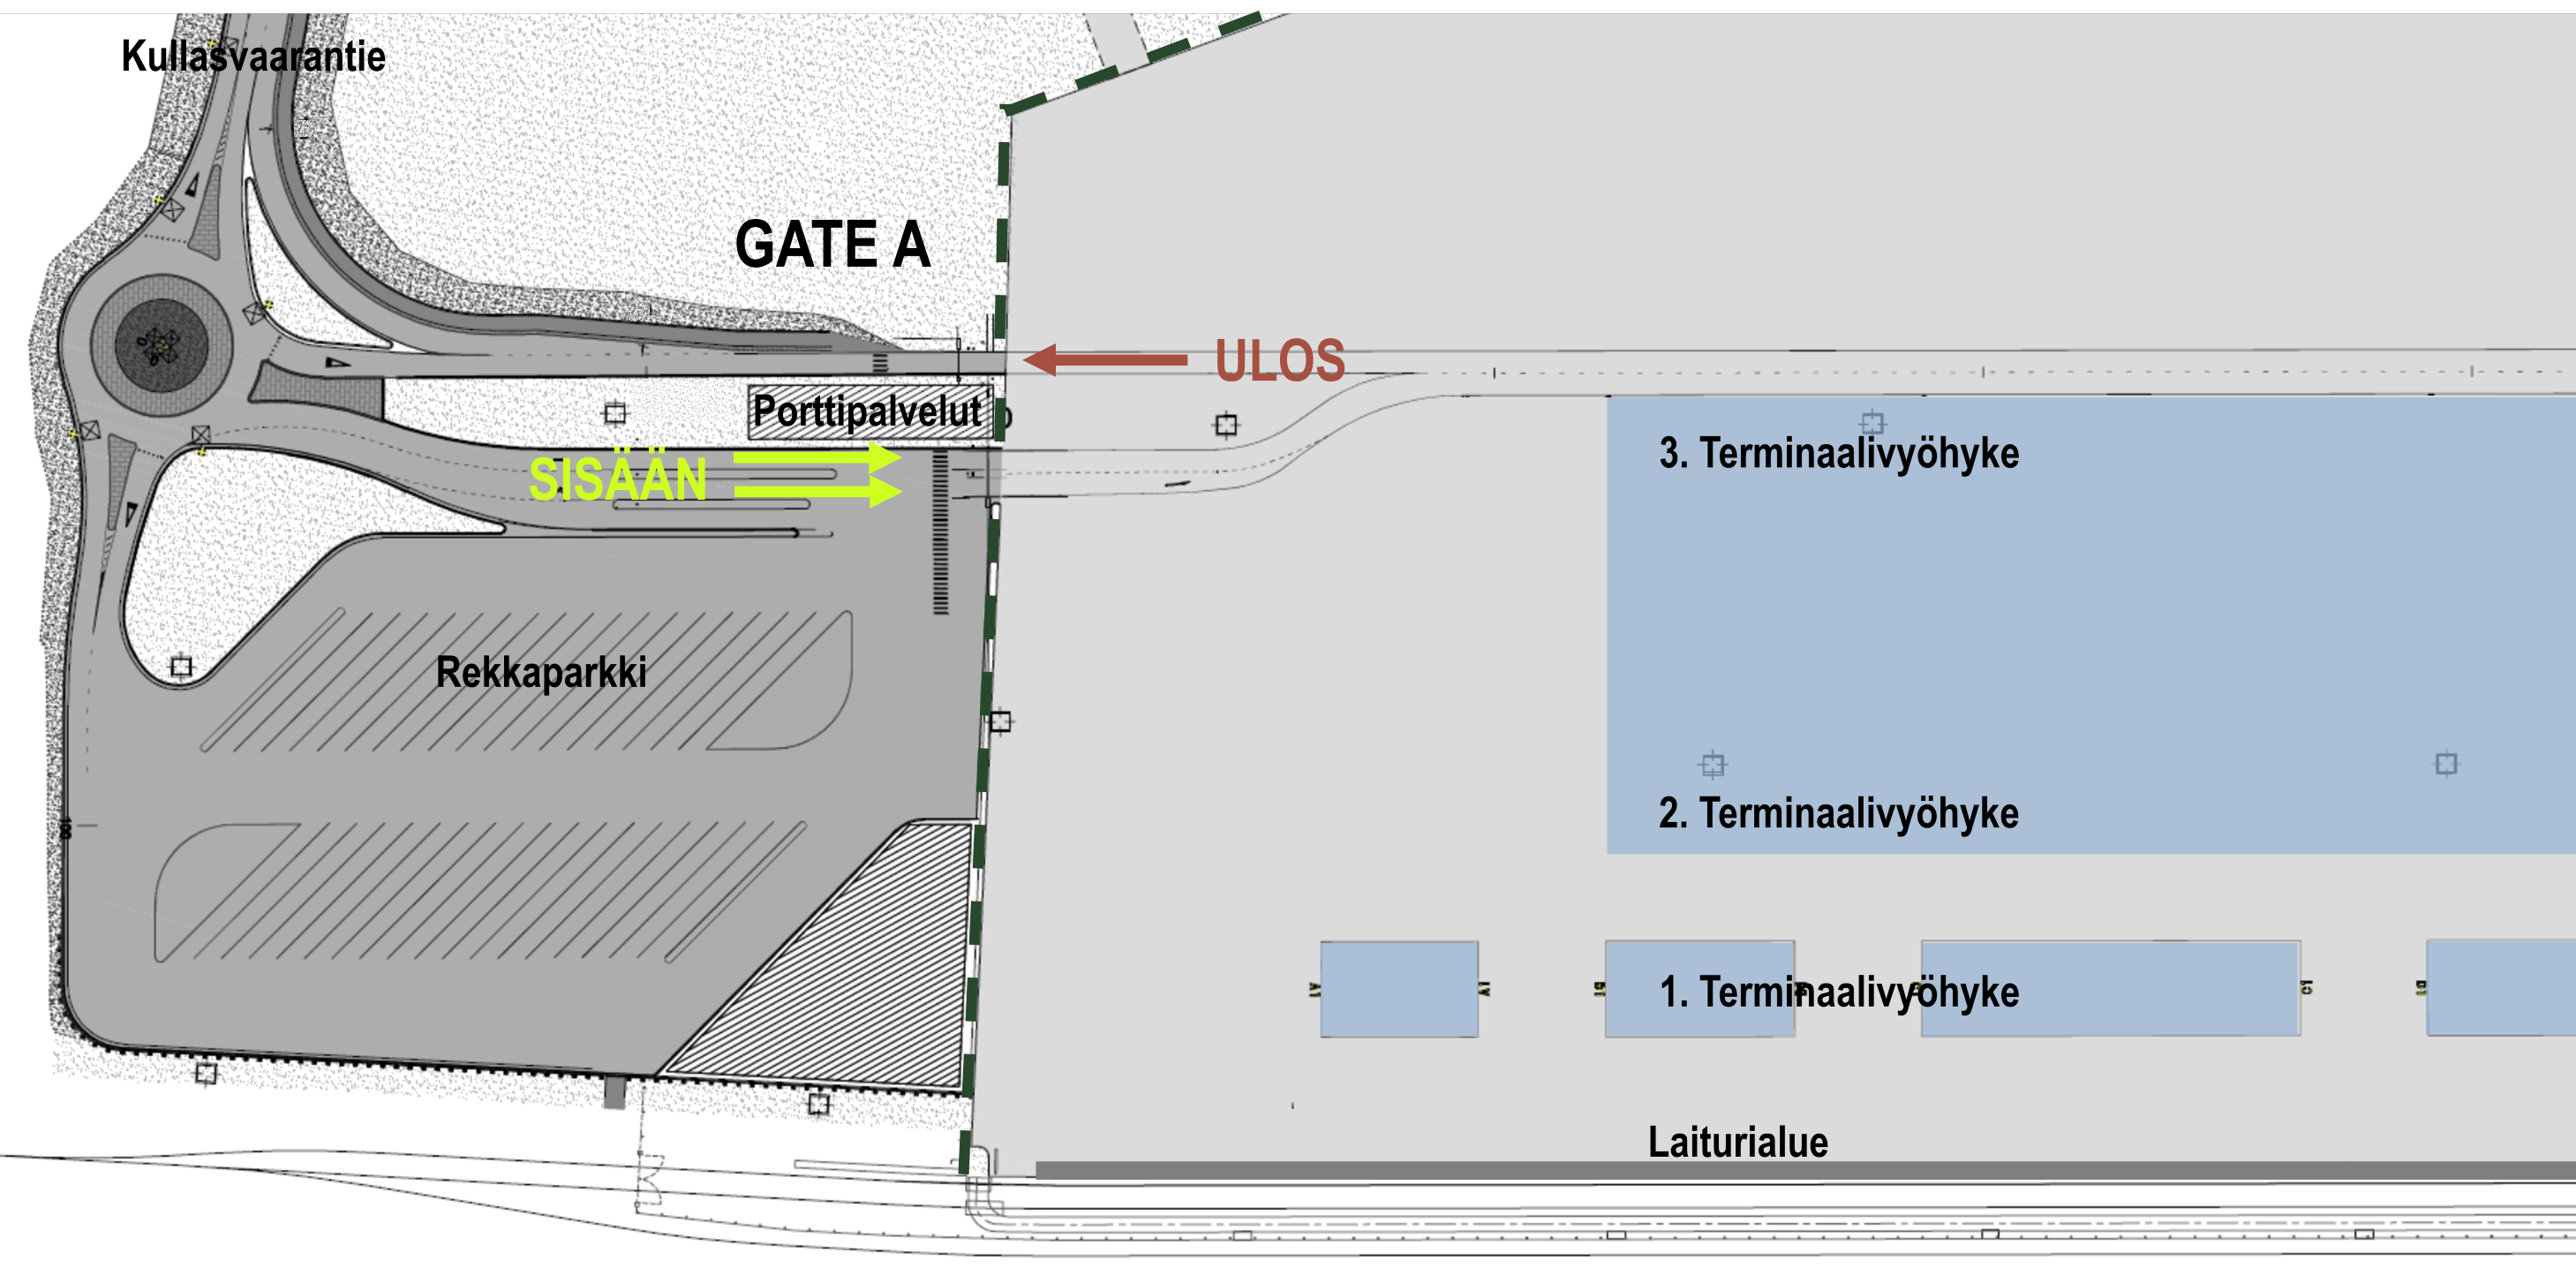 Karttakuva Kouvola RRT:n pääportin, GATE A:n alueesta ja terminaaliin ajosta.